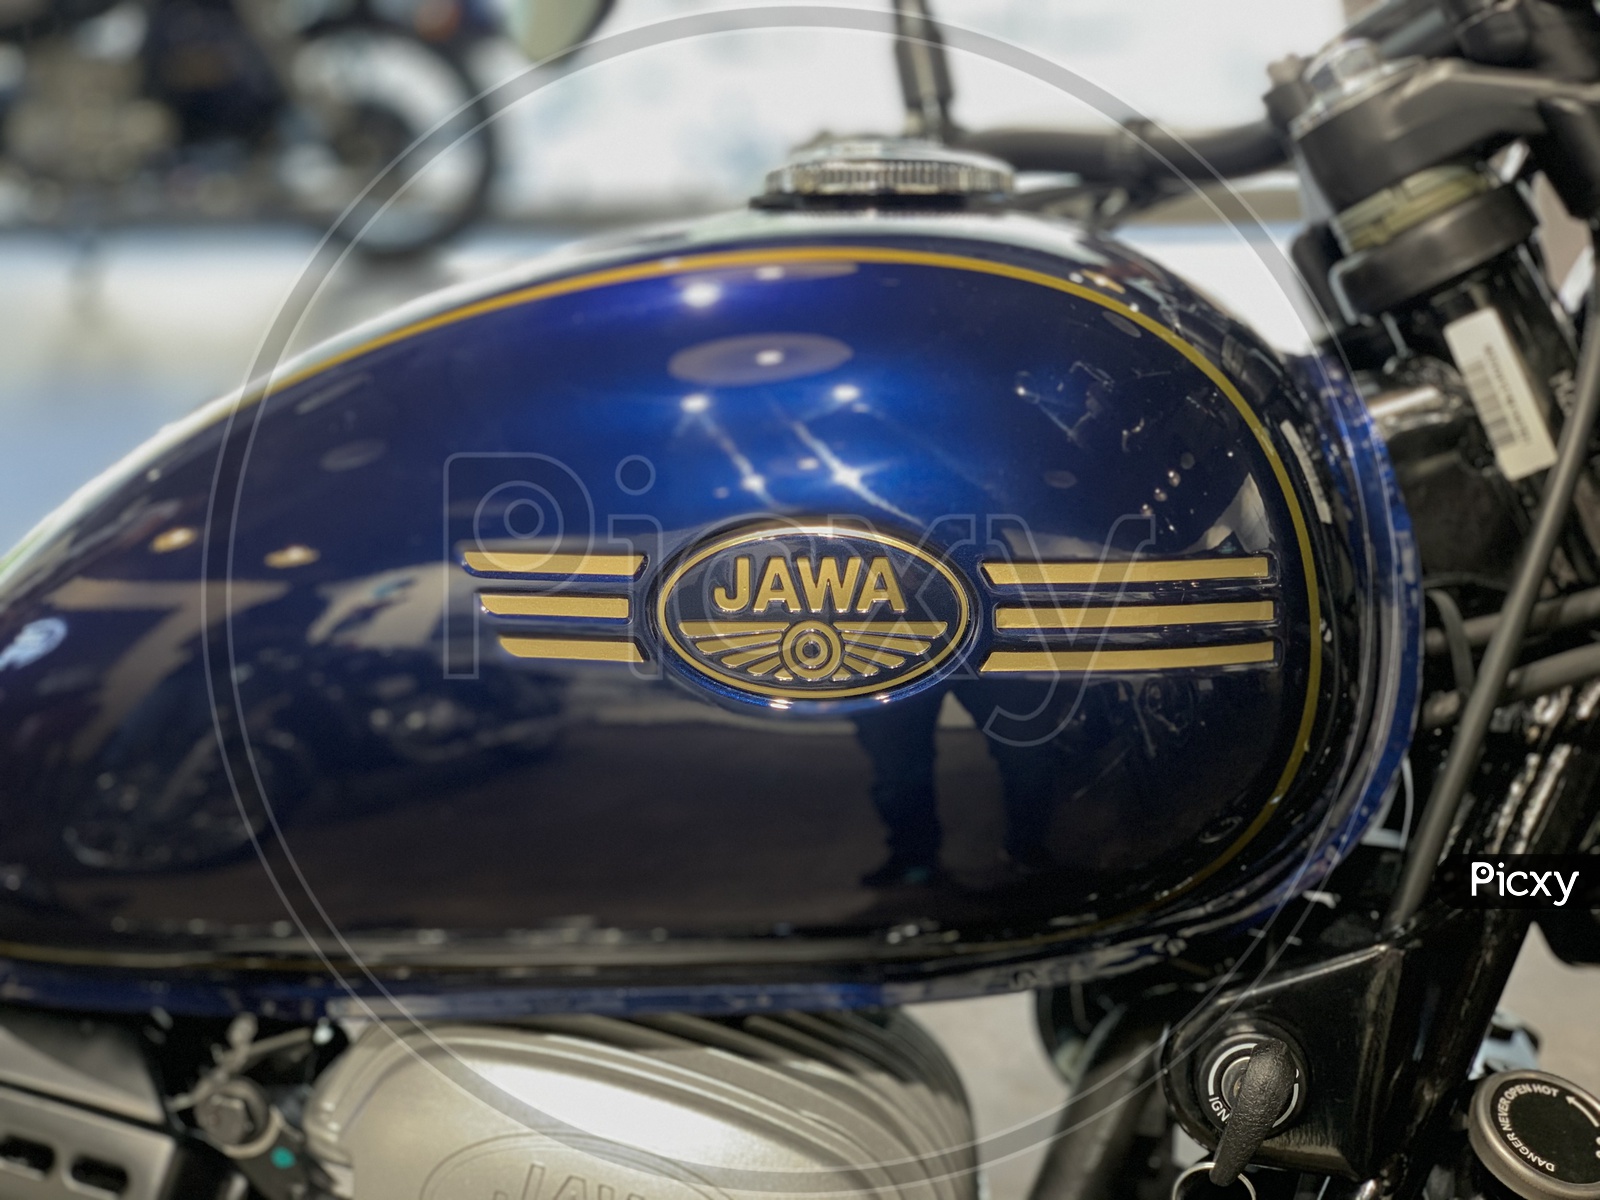 JAWA company logo